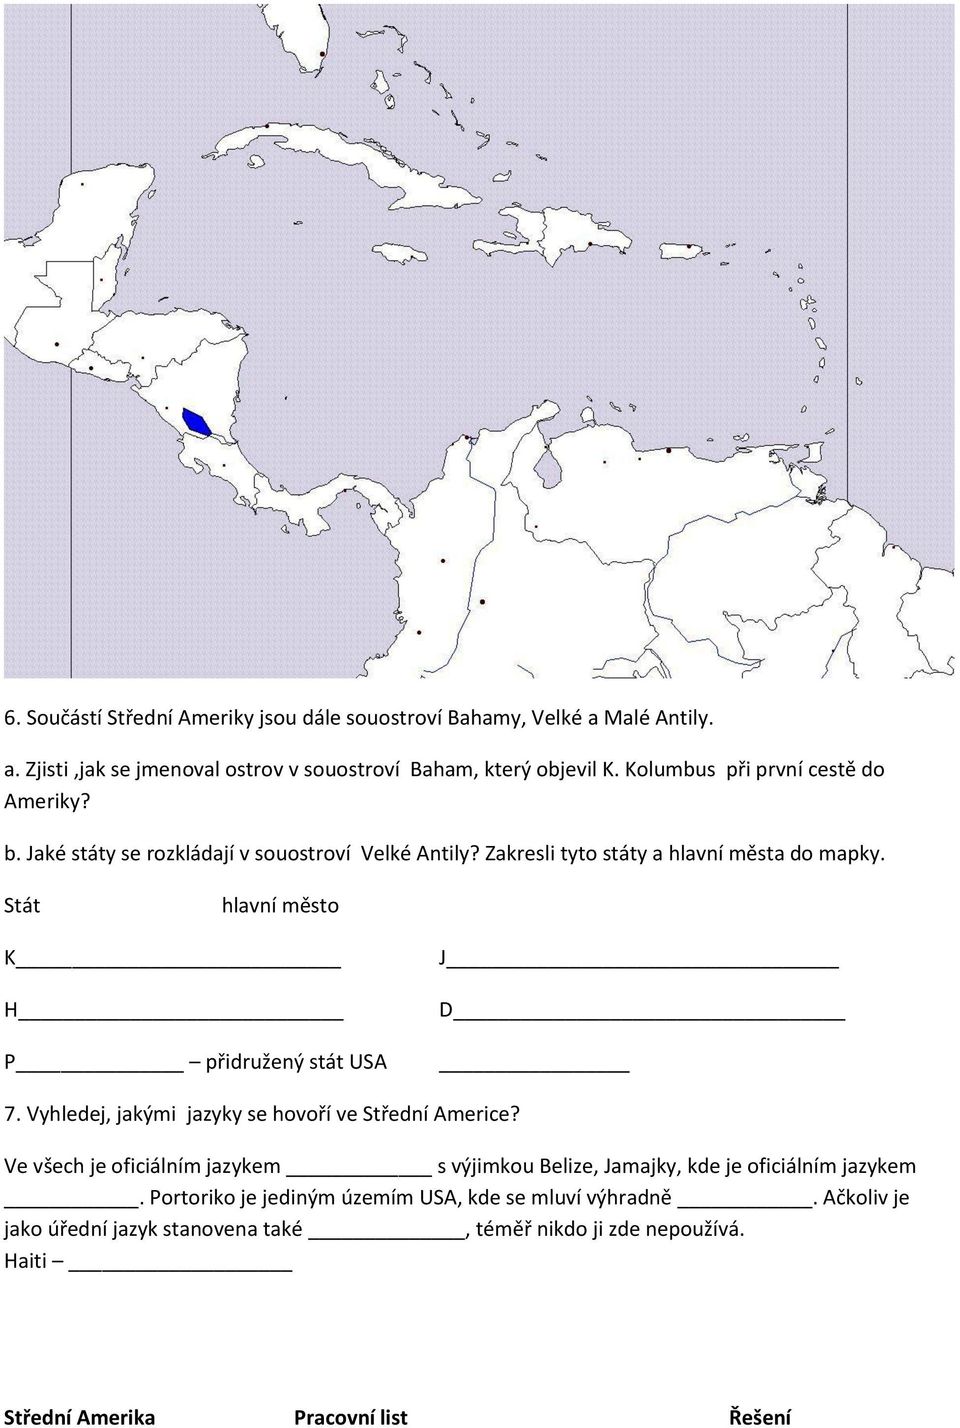 Stát hlavní město K H P přidružený stát USA J D 7. Vyhledej, jakými jazyky se hovoří ve Střední Americe?